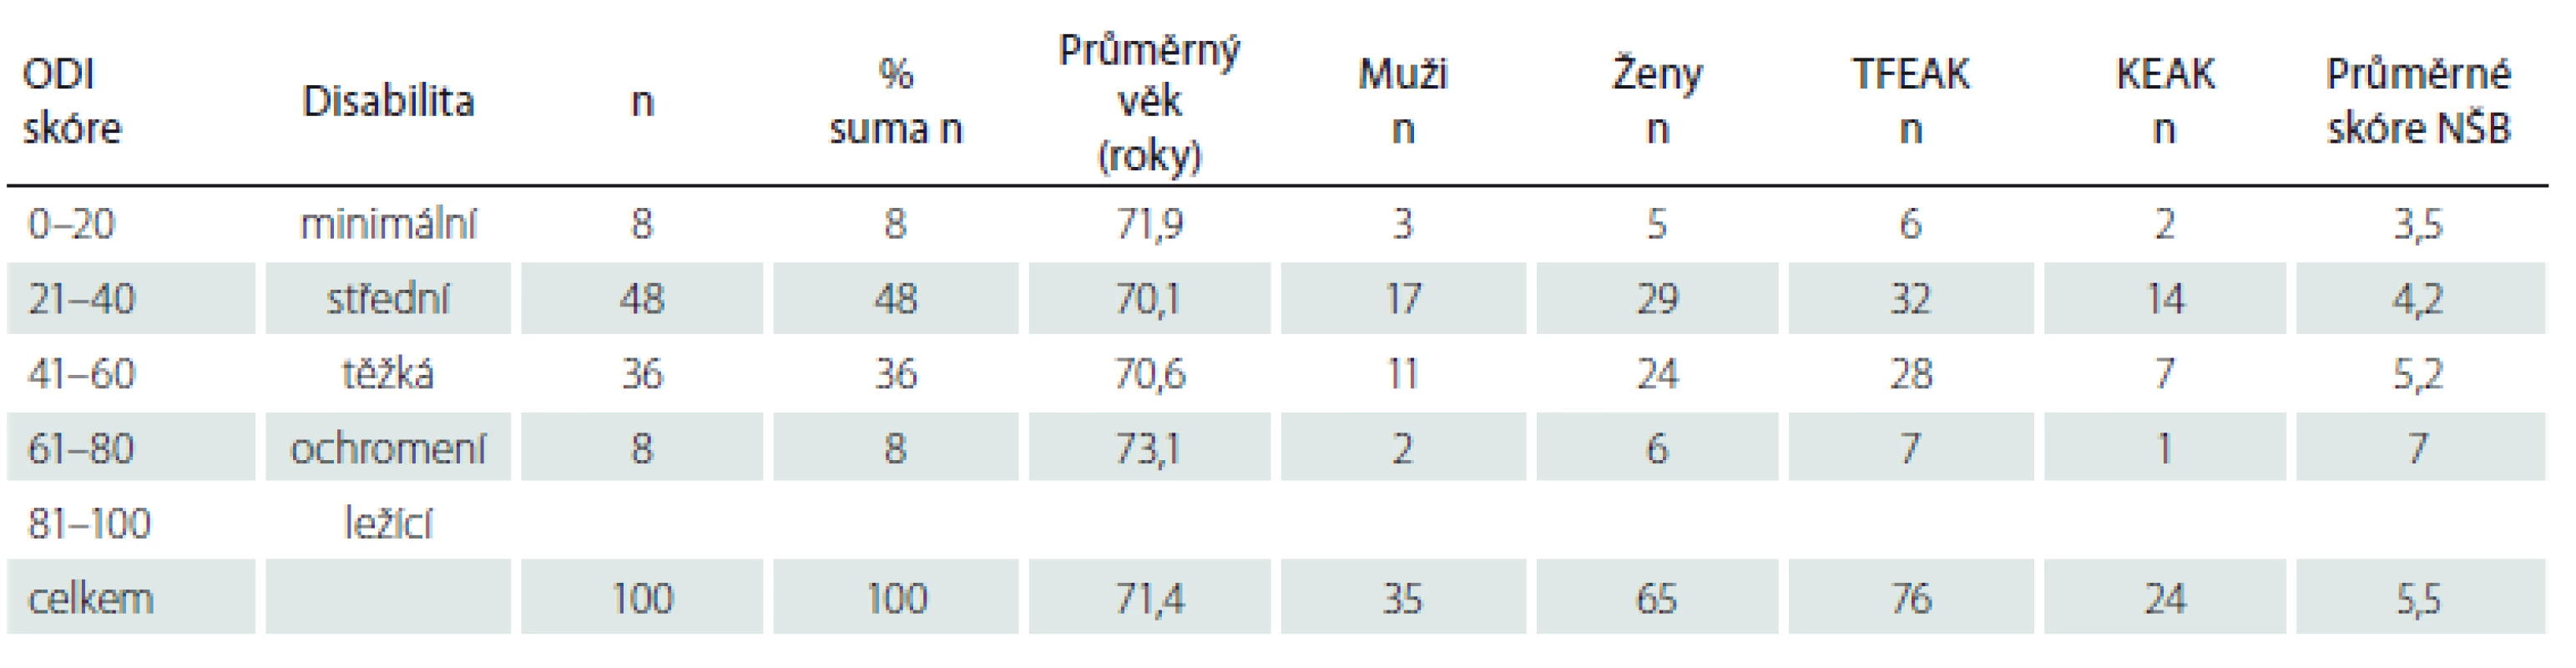 Výsledky po roztřídení podsouboru seniorů podle indexu ODI.